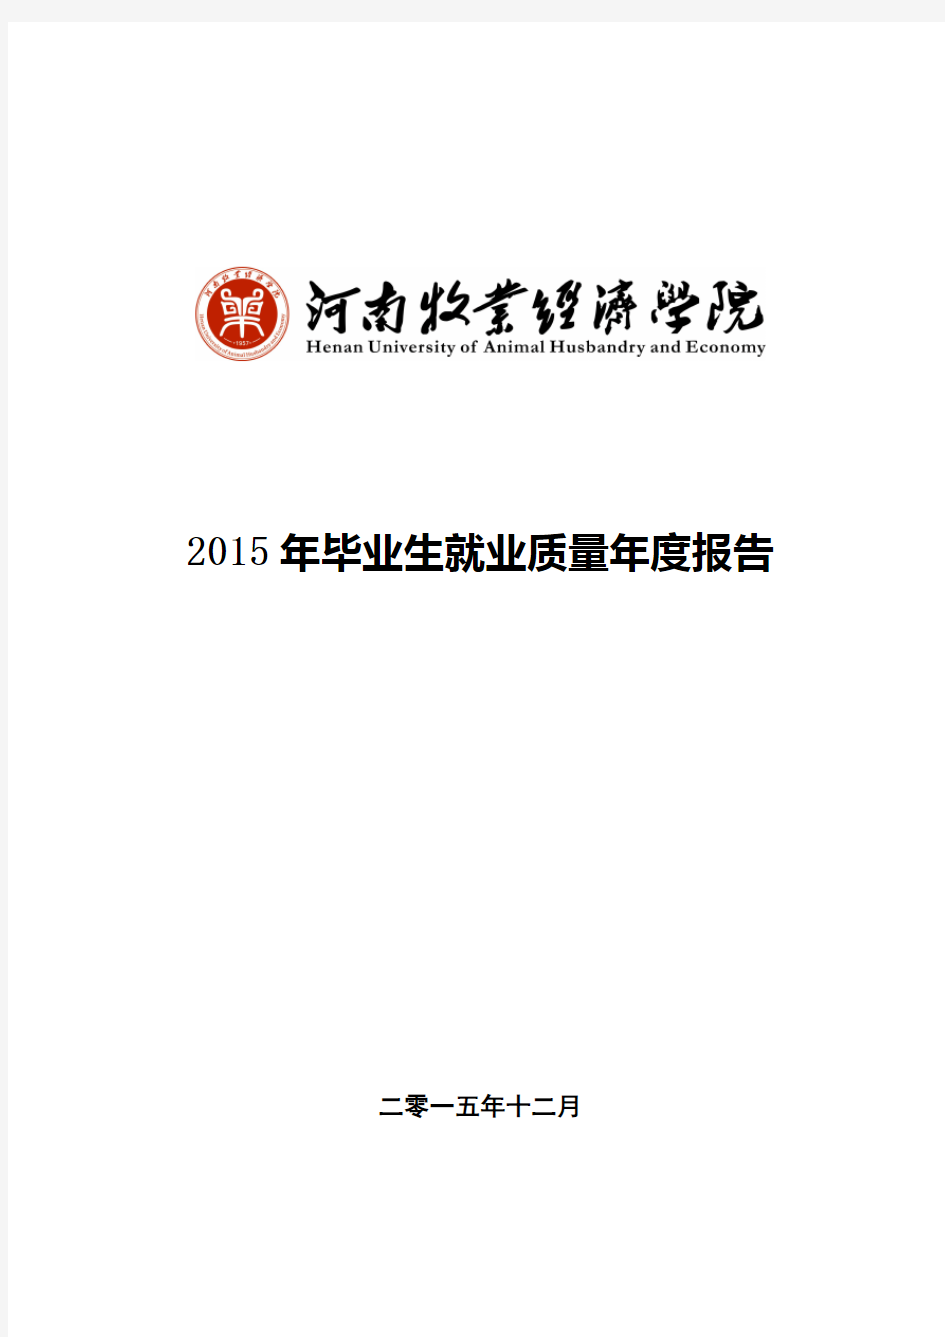 河南牧业经济学院2015年毕业生就业质量报告